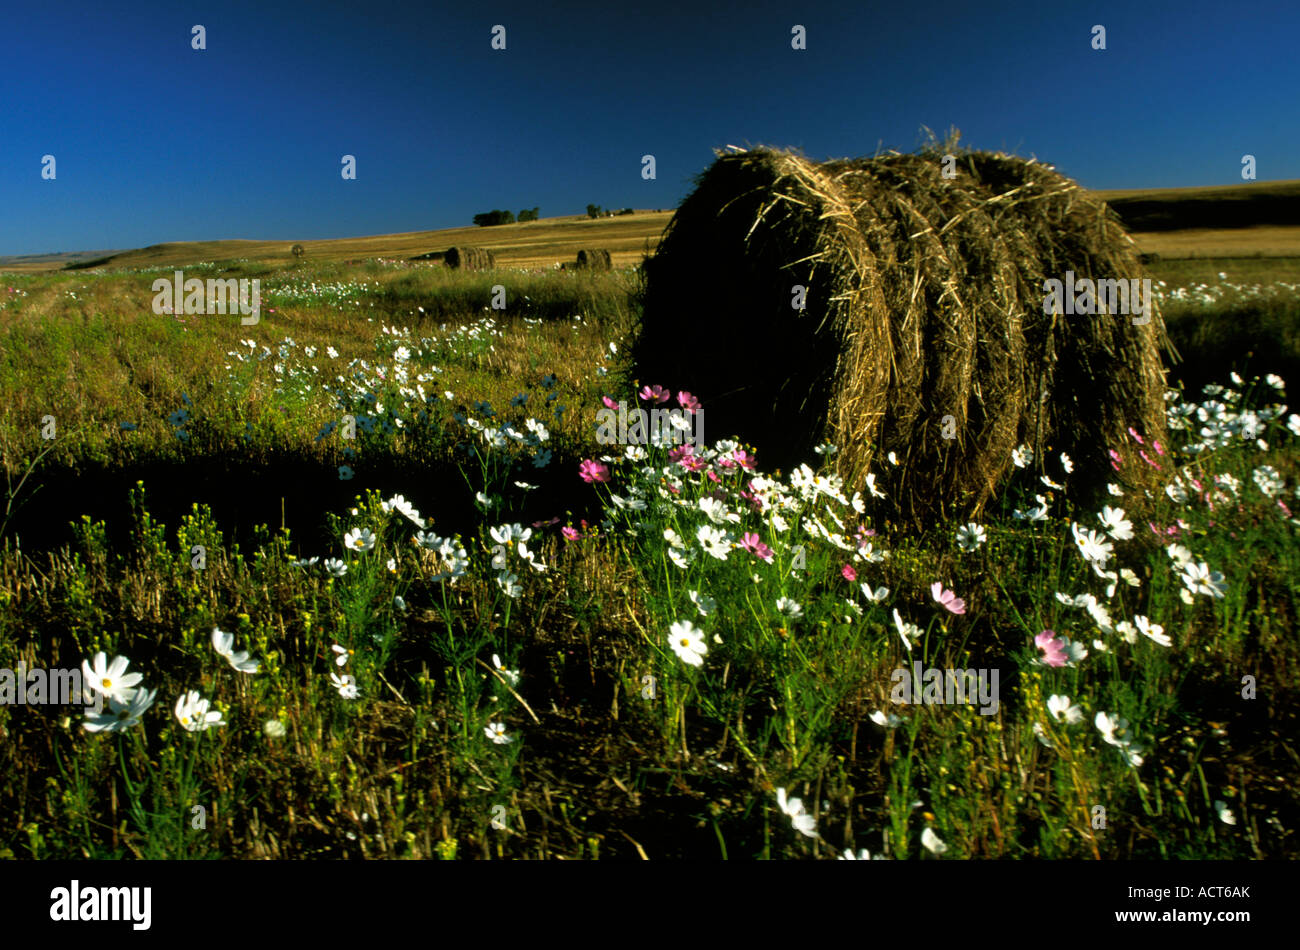 Landschaft mit Cosmos Blumen und Heuballen Clarens Fouriesburg Südafrika Stockfoto